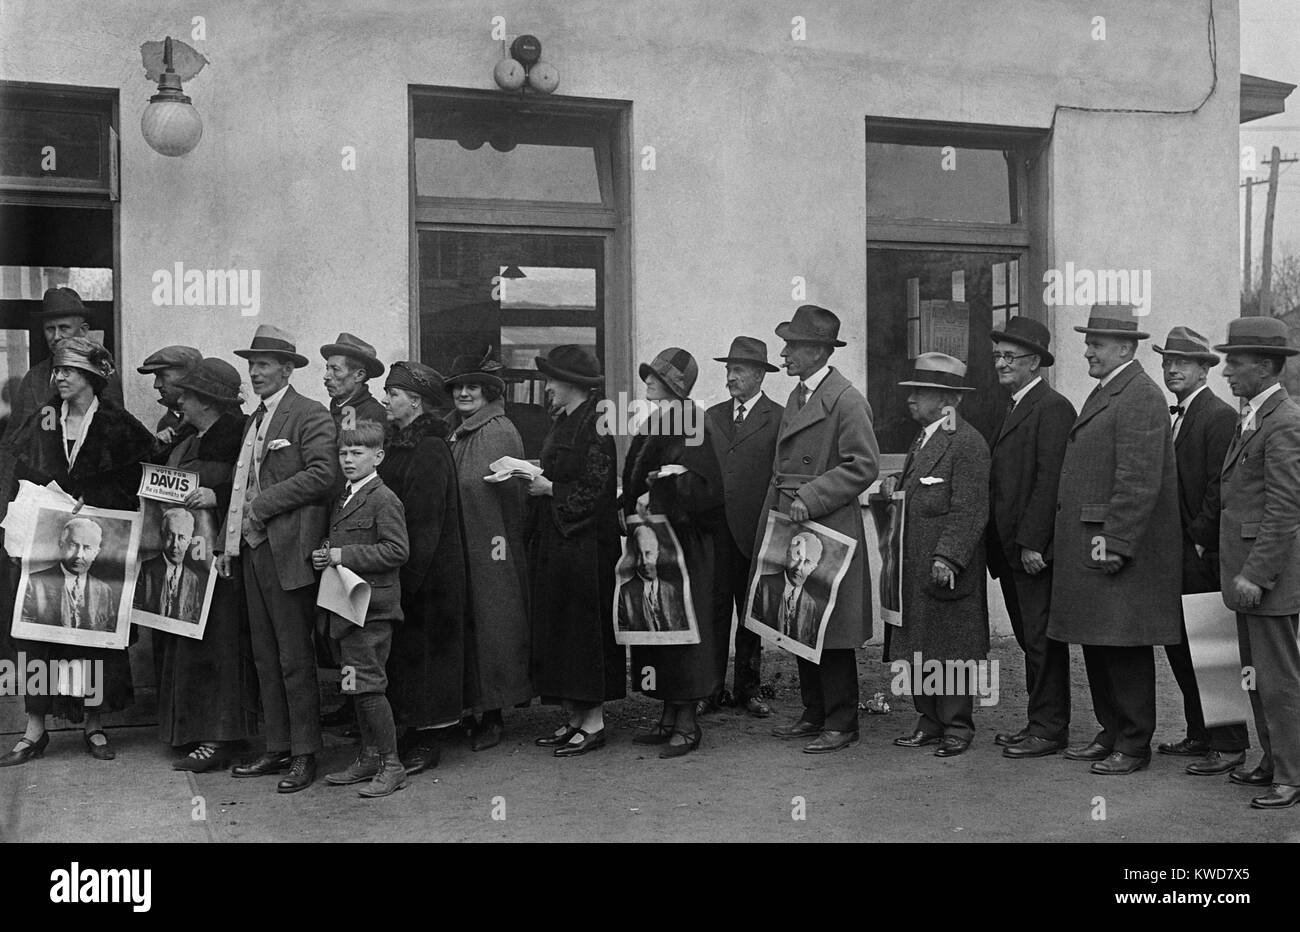 Männer und Frauen in der Warteschlange bei der Clarendon, Virginia, November 4, 1924 zu stimmen. Einige Leute halten Plakate für Demokratische Präsidentschaftskandidat, John Davis. (BSLOC 2015 16 191) Stockfoto